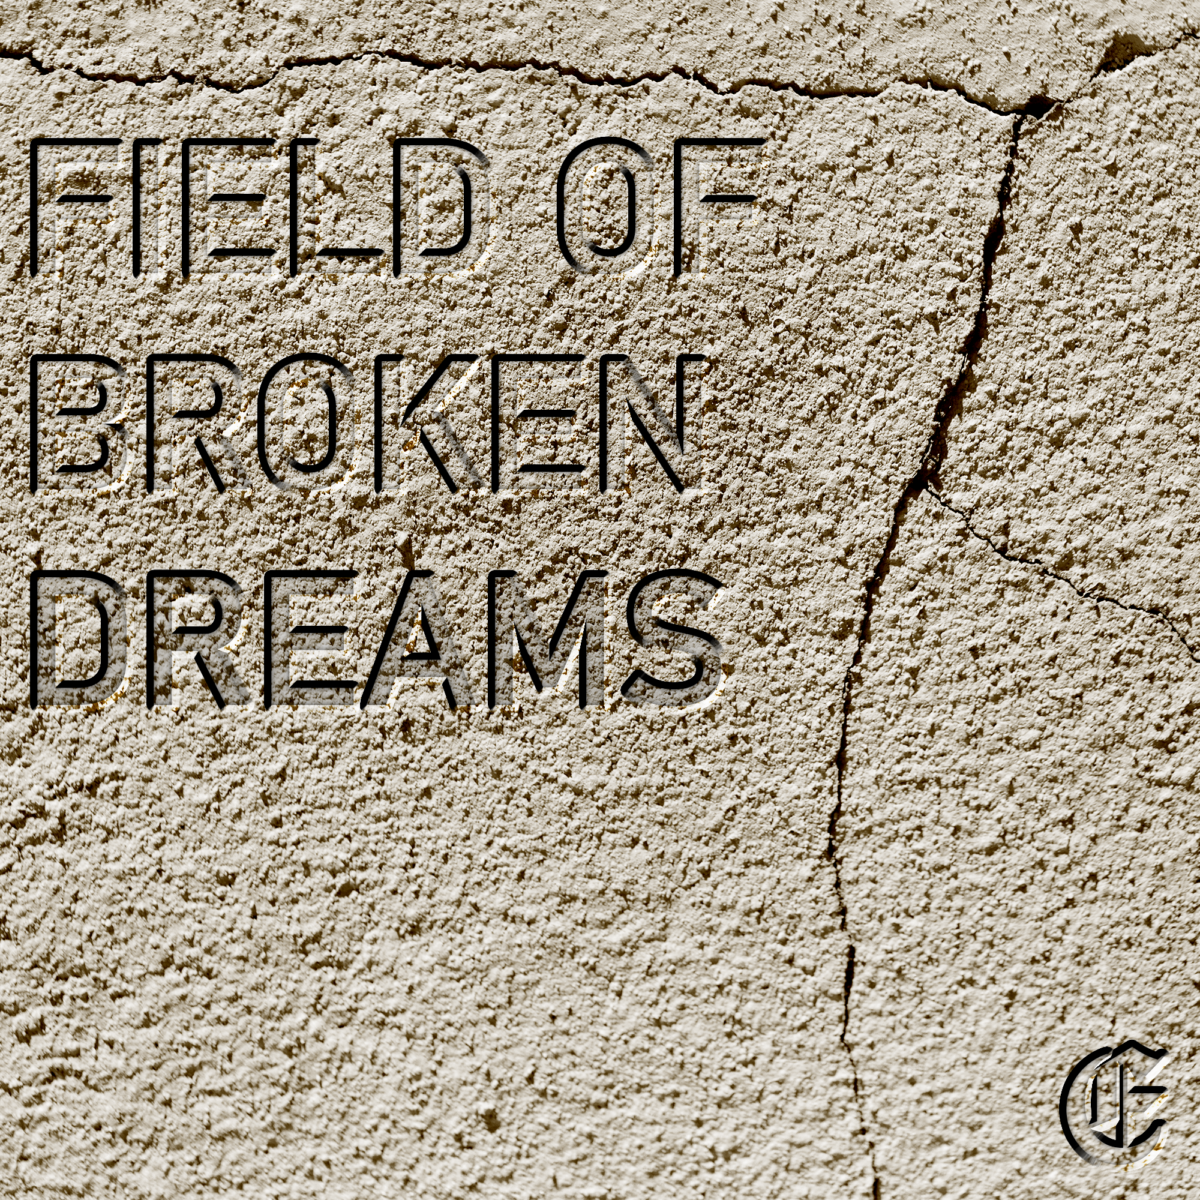 Introducing Field of Broken Dreams